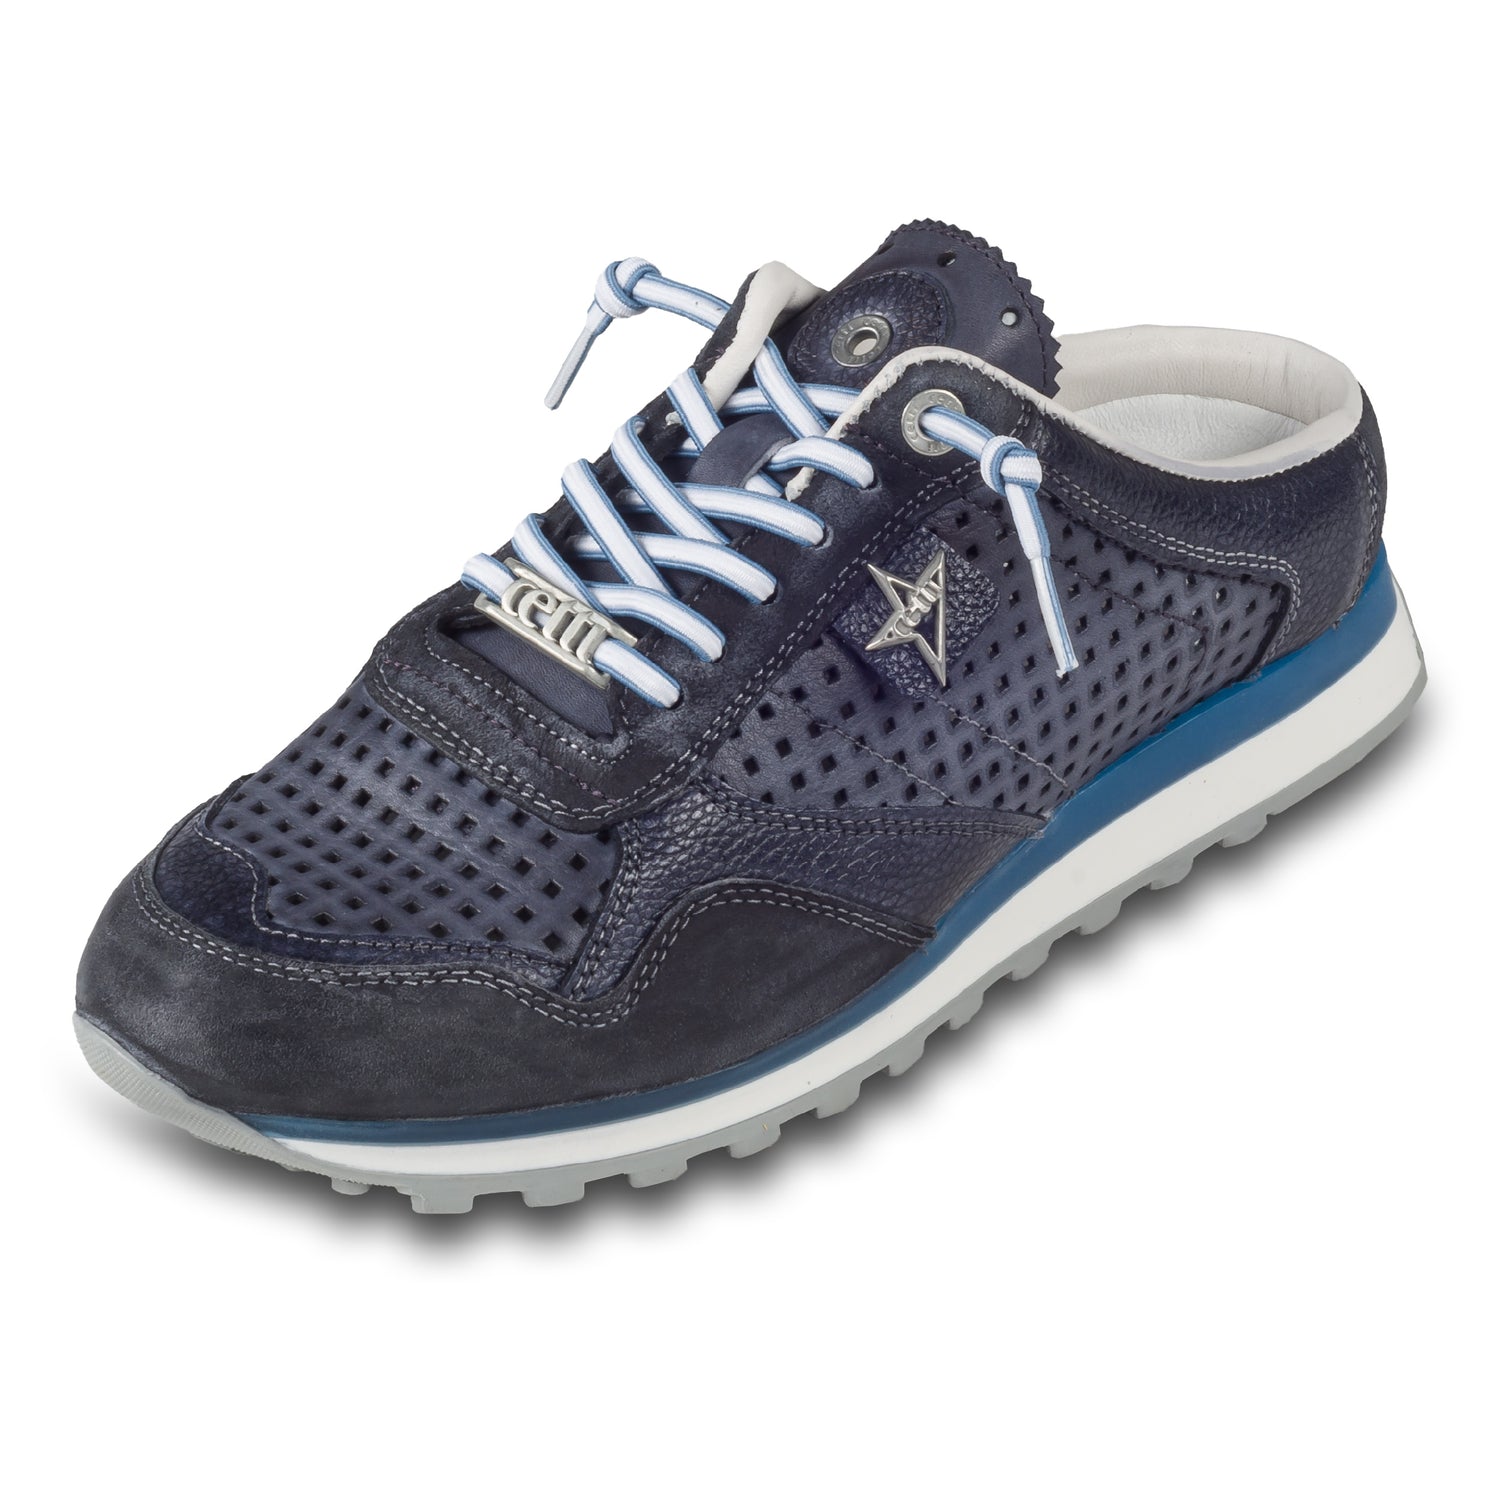 CETTI Herren Leder Sneaker-Mule, Modell „C848“ in dunkelblau / grau (used tin antracita), Made in Spain. Ansicht der Ferse und Sohlenunterseite. Schräge Ansicht linker Schuh.